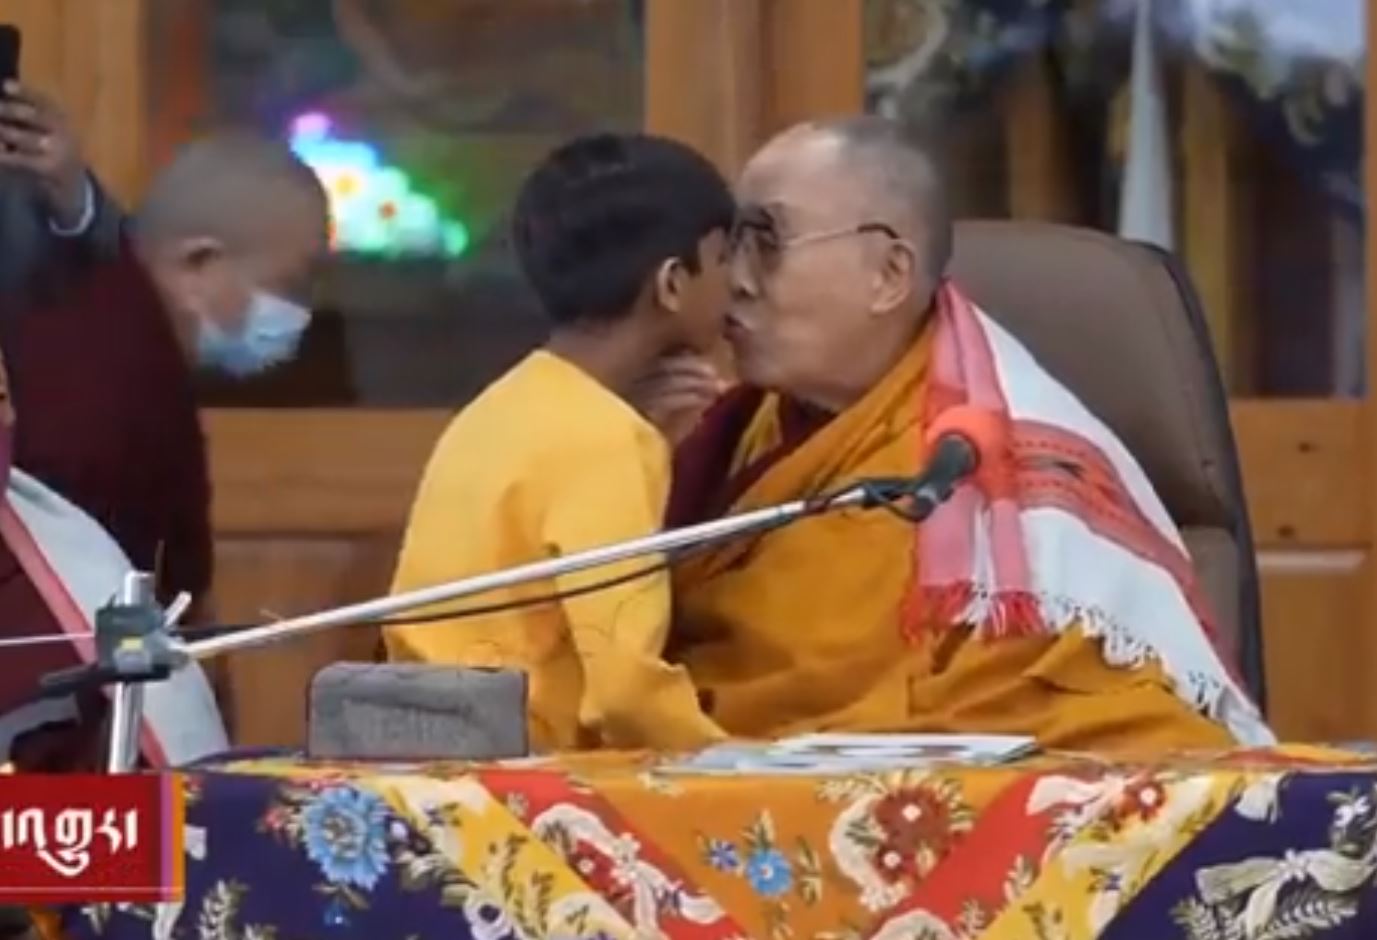 Δαλάι Λάμα: Σάλος με τη συμπεριφορά του απέναντι σε νεαρό αγόρι – Του ζήτησε να του «γλείψει τη γλώσσα»